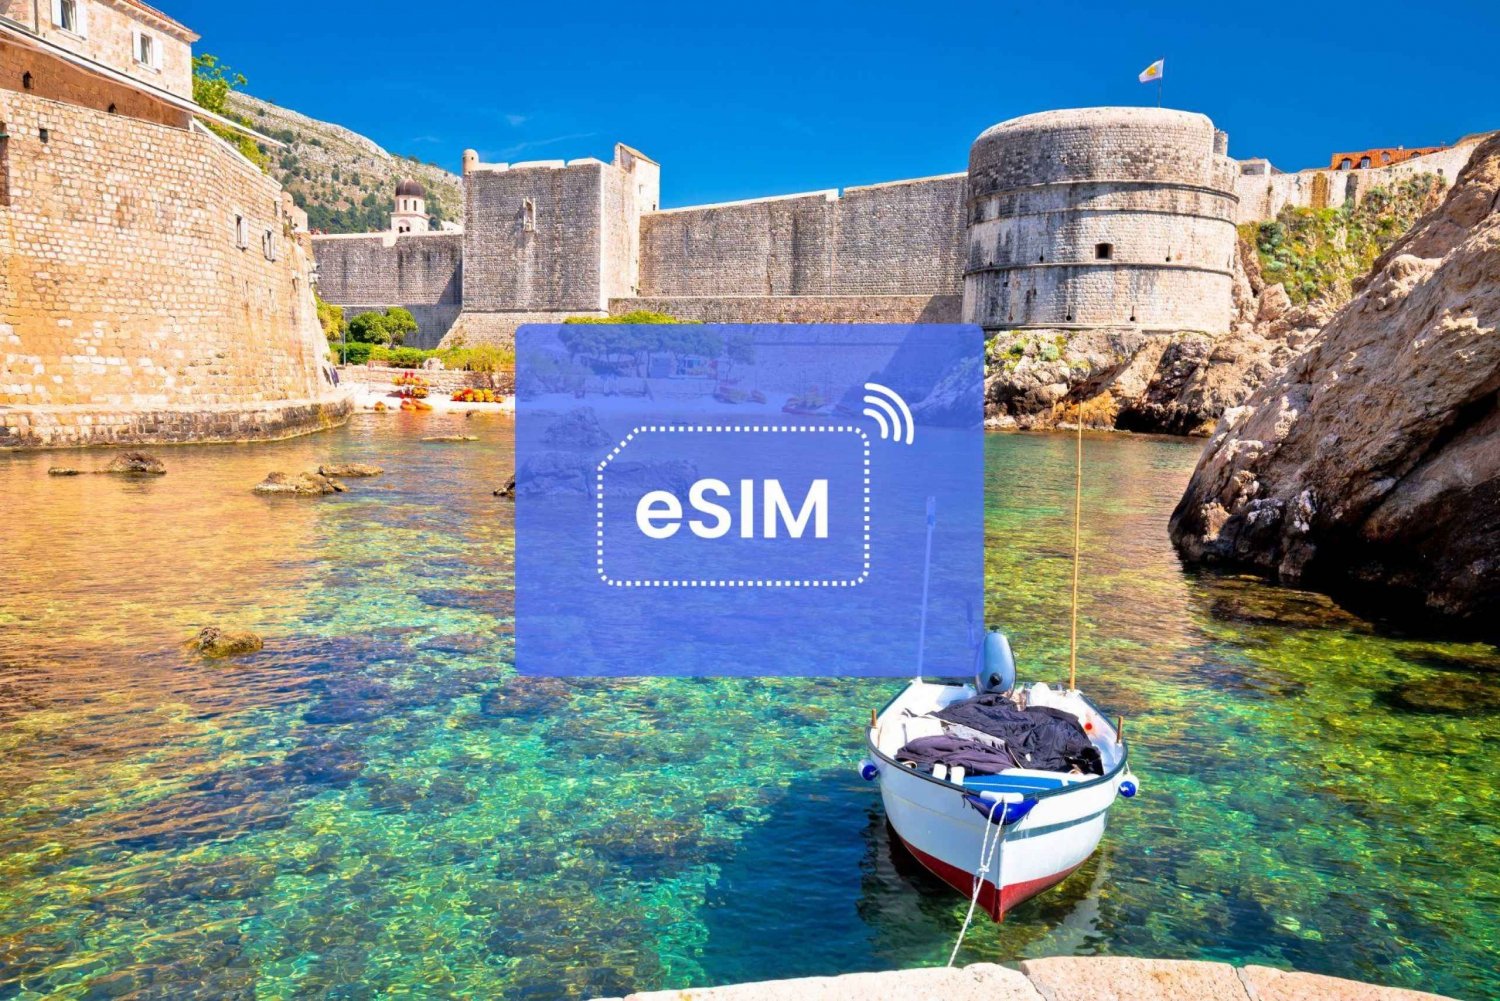 Dubrovnik: Croatia/ Europe eSIM Roaming Mobile Data Plan